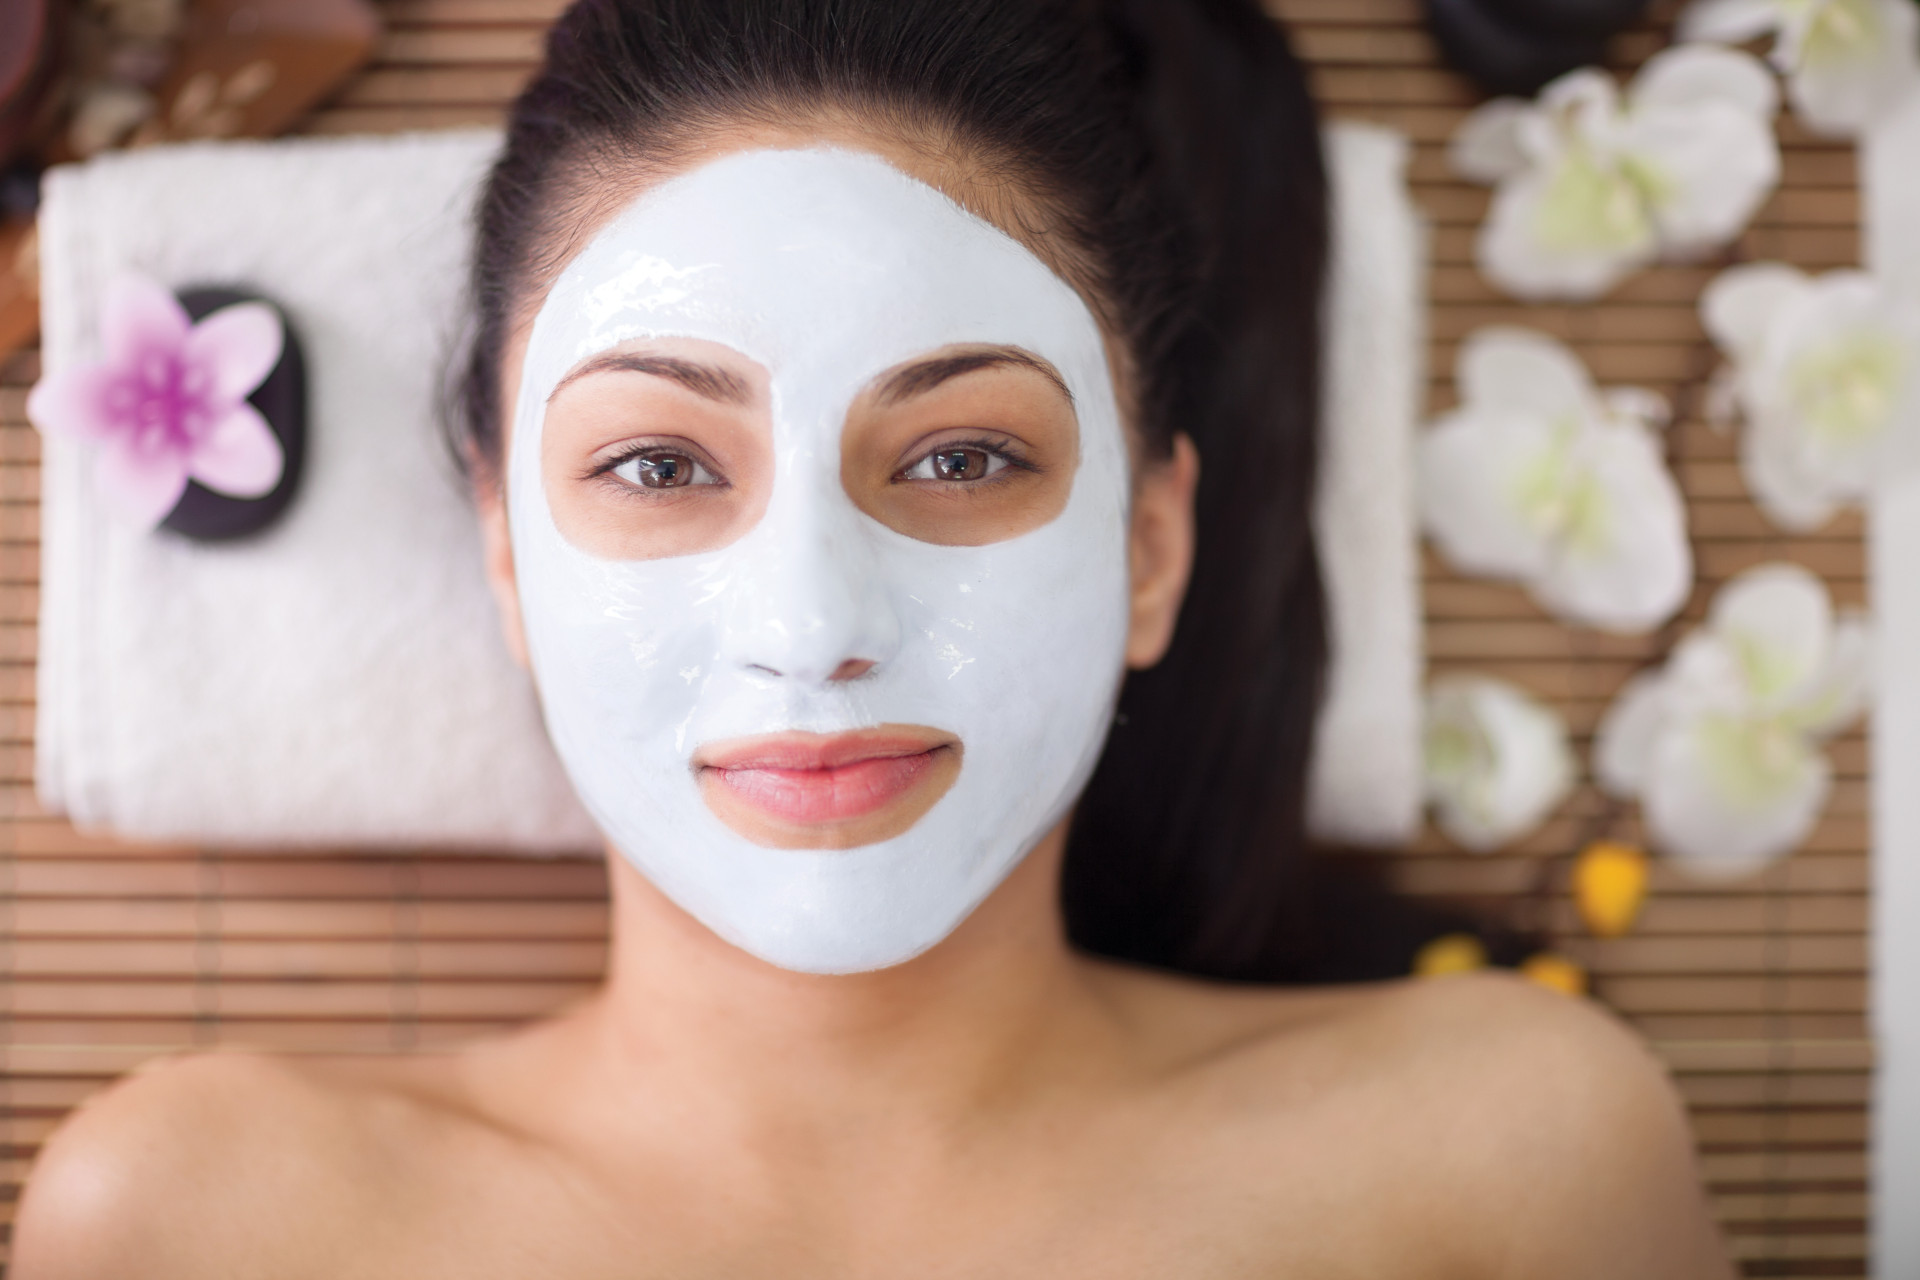 Facial detox: Tips for healthier skin